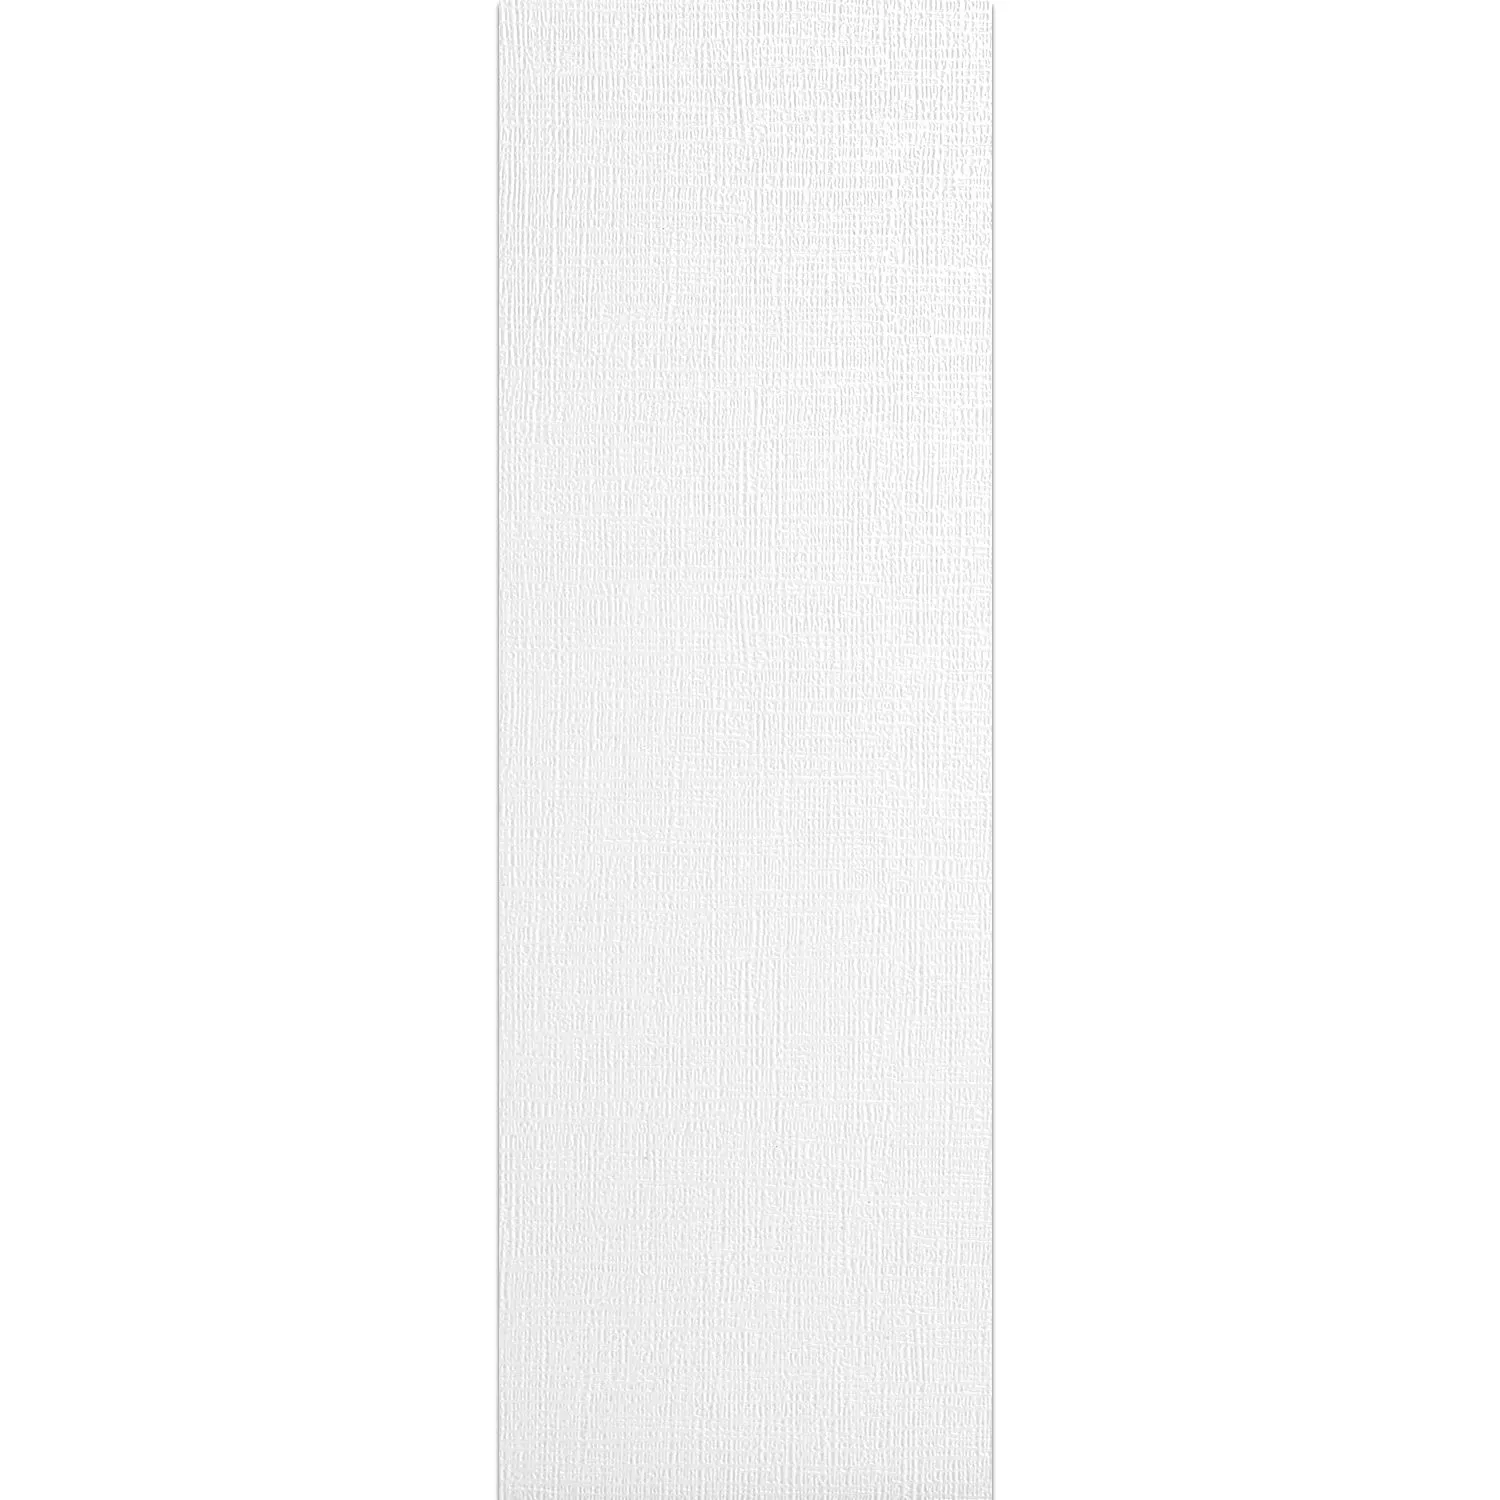 Rivestimenti Vulcano Metallo Decorative Bianco Opaco 30x120cm